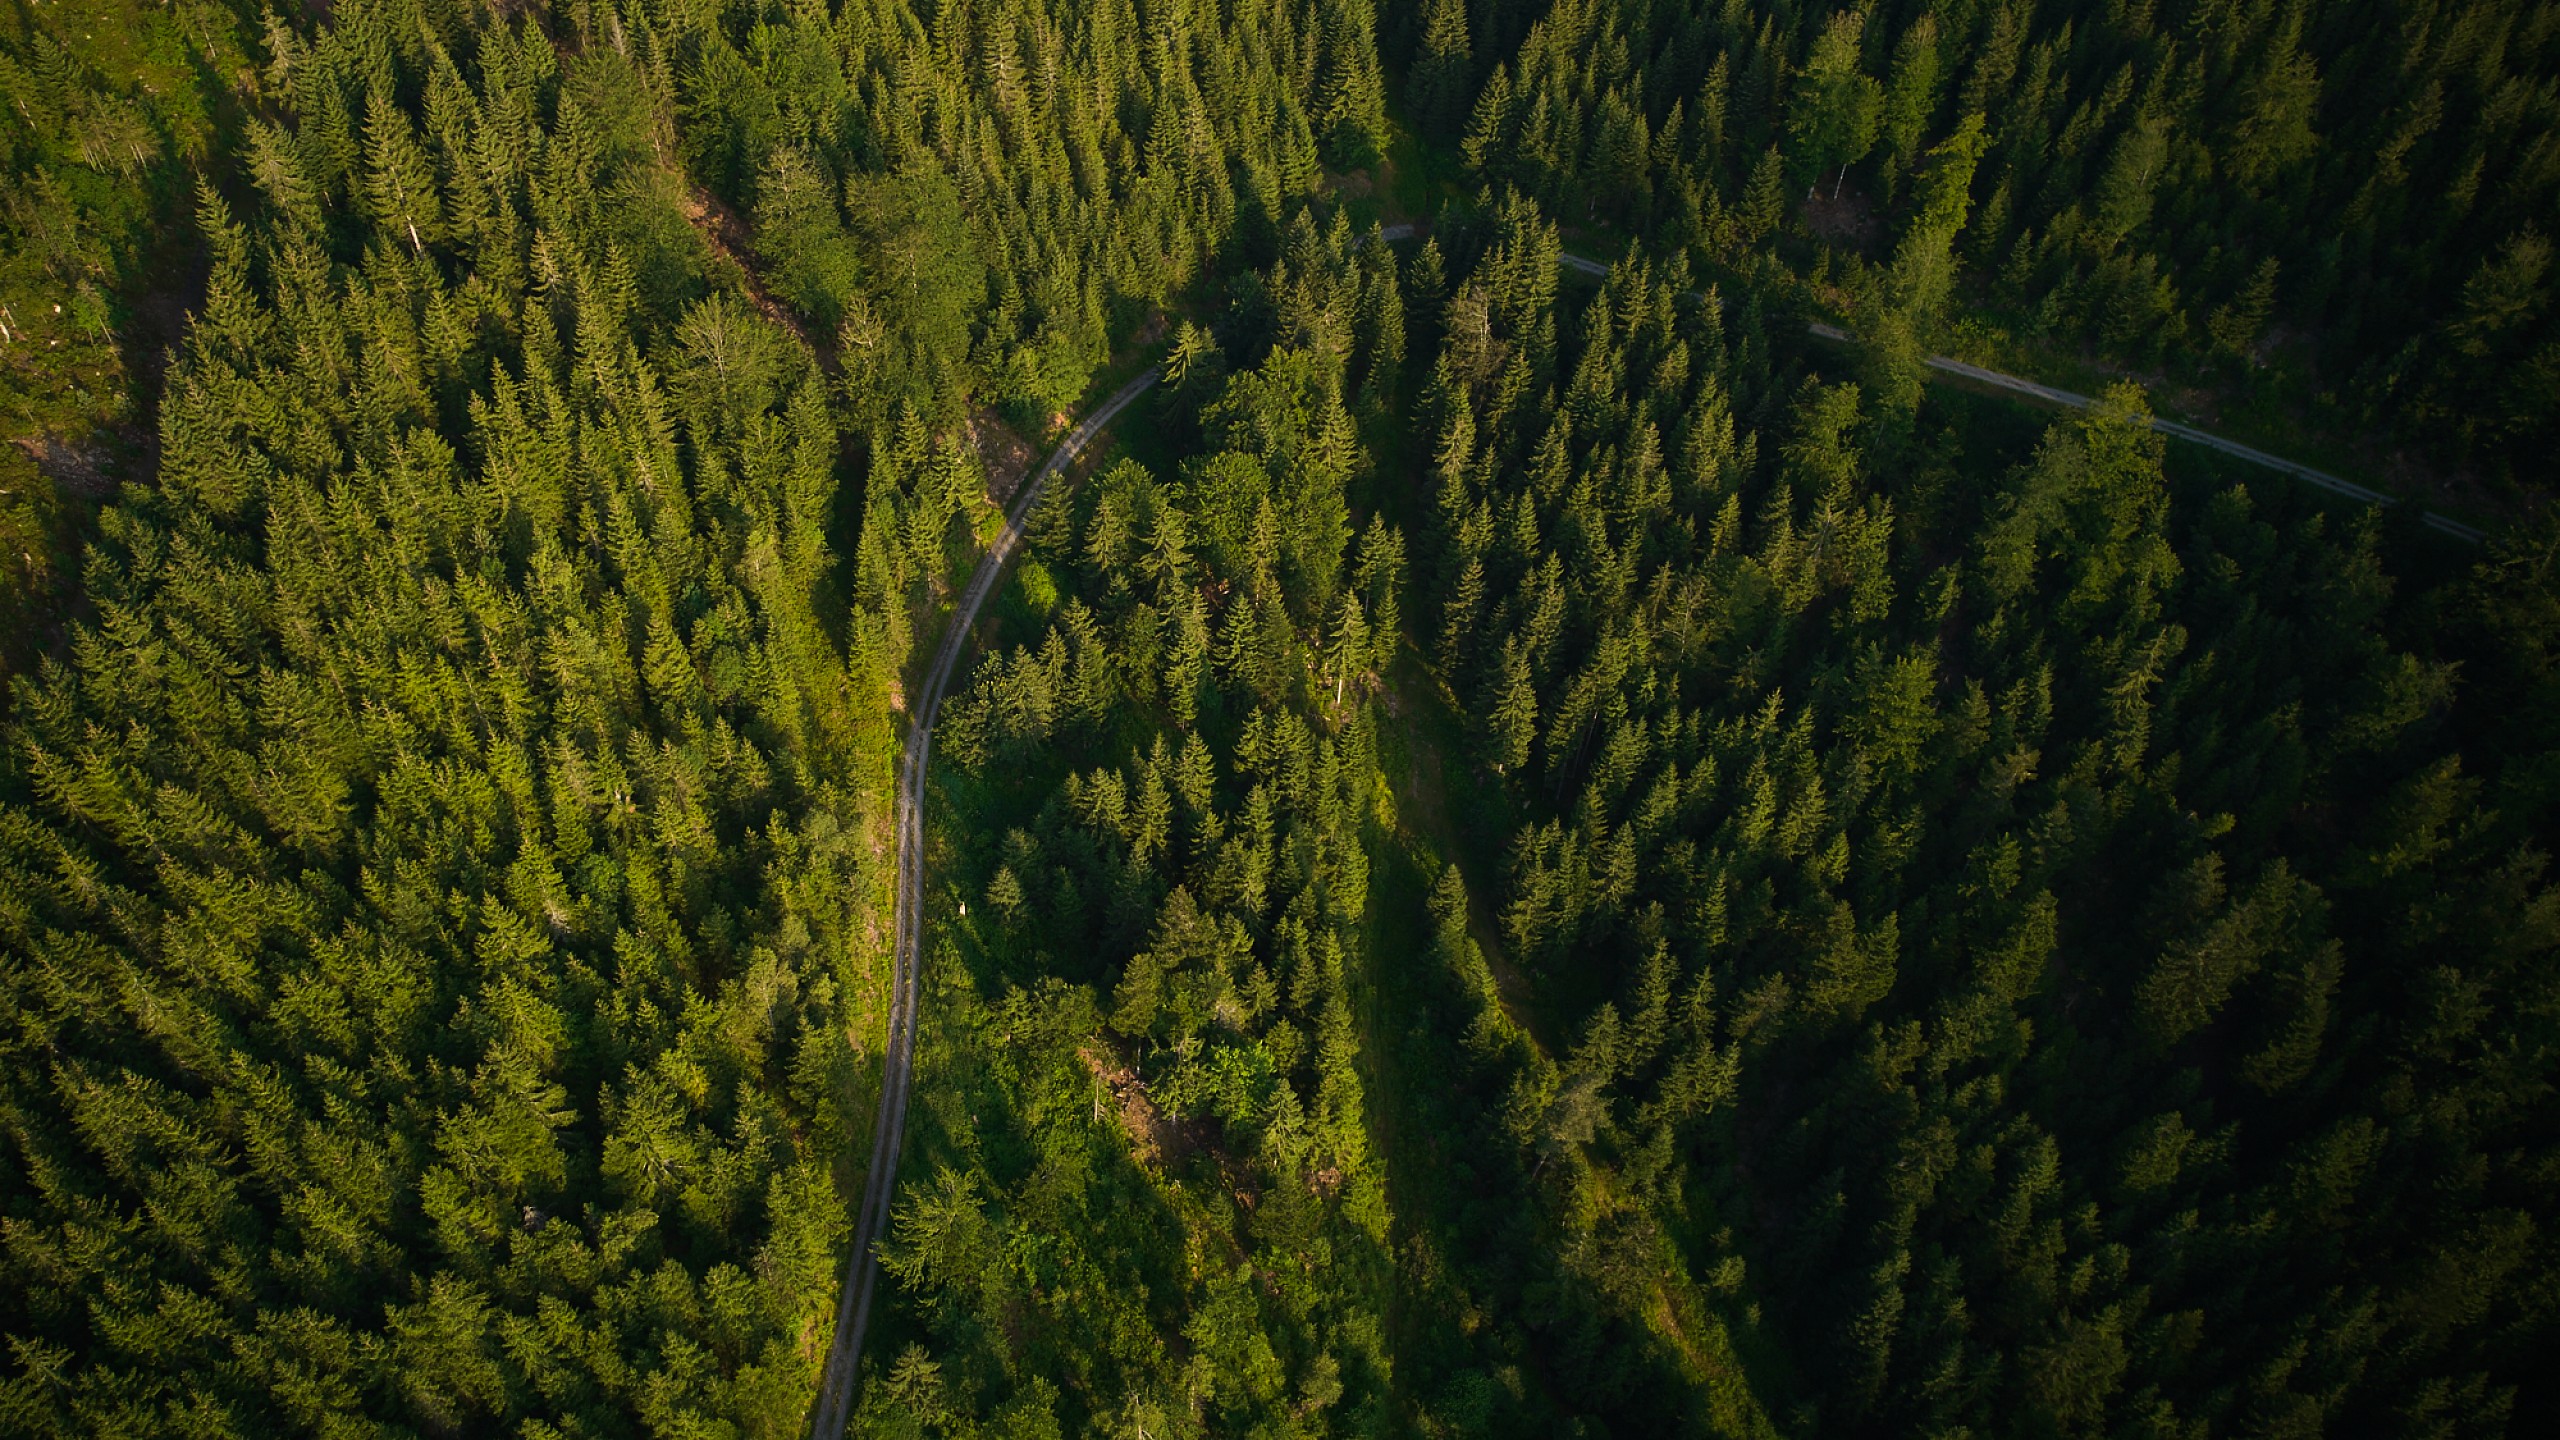 Eine schmale Straße durchzieht den dicht bewachsenen Schwarzwald in der Nähe des Hotels.